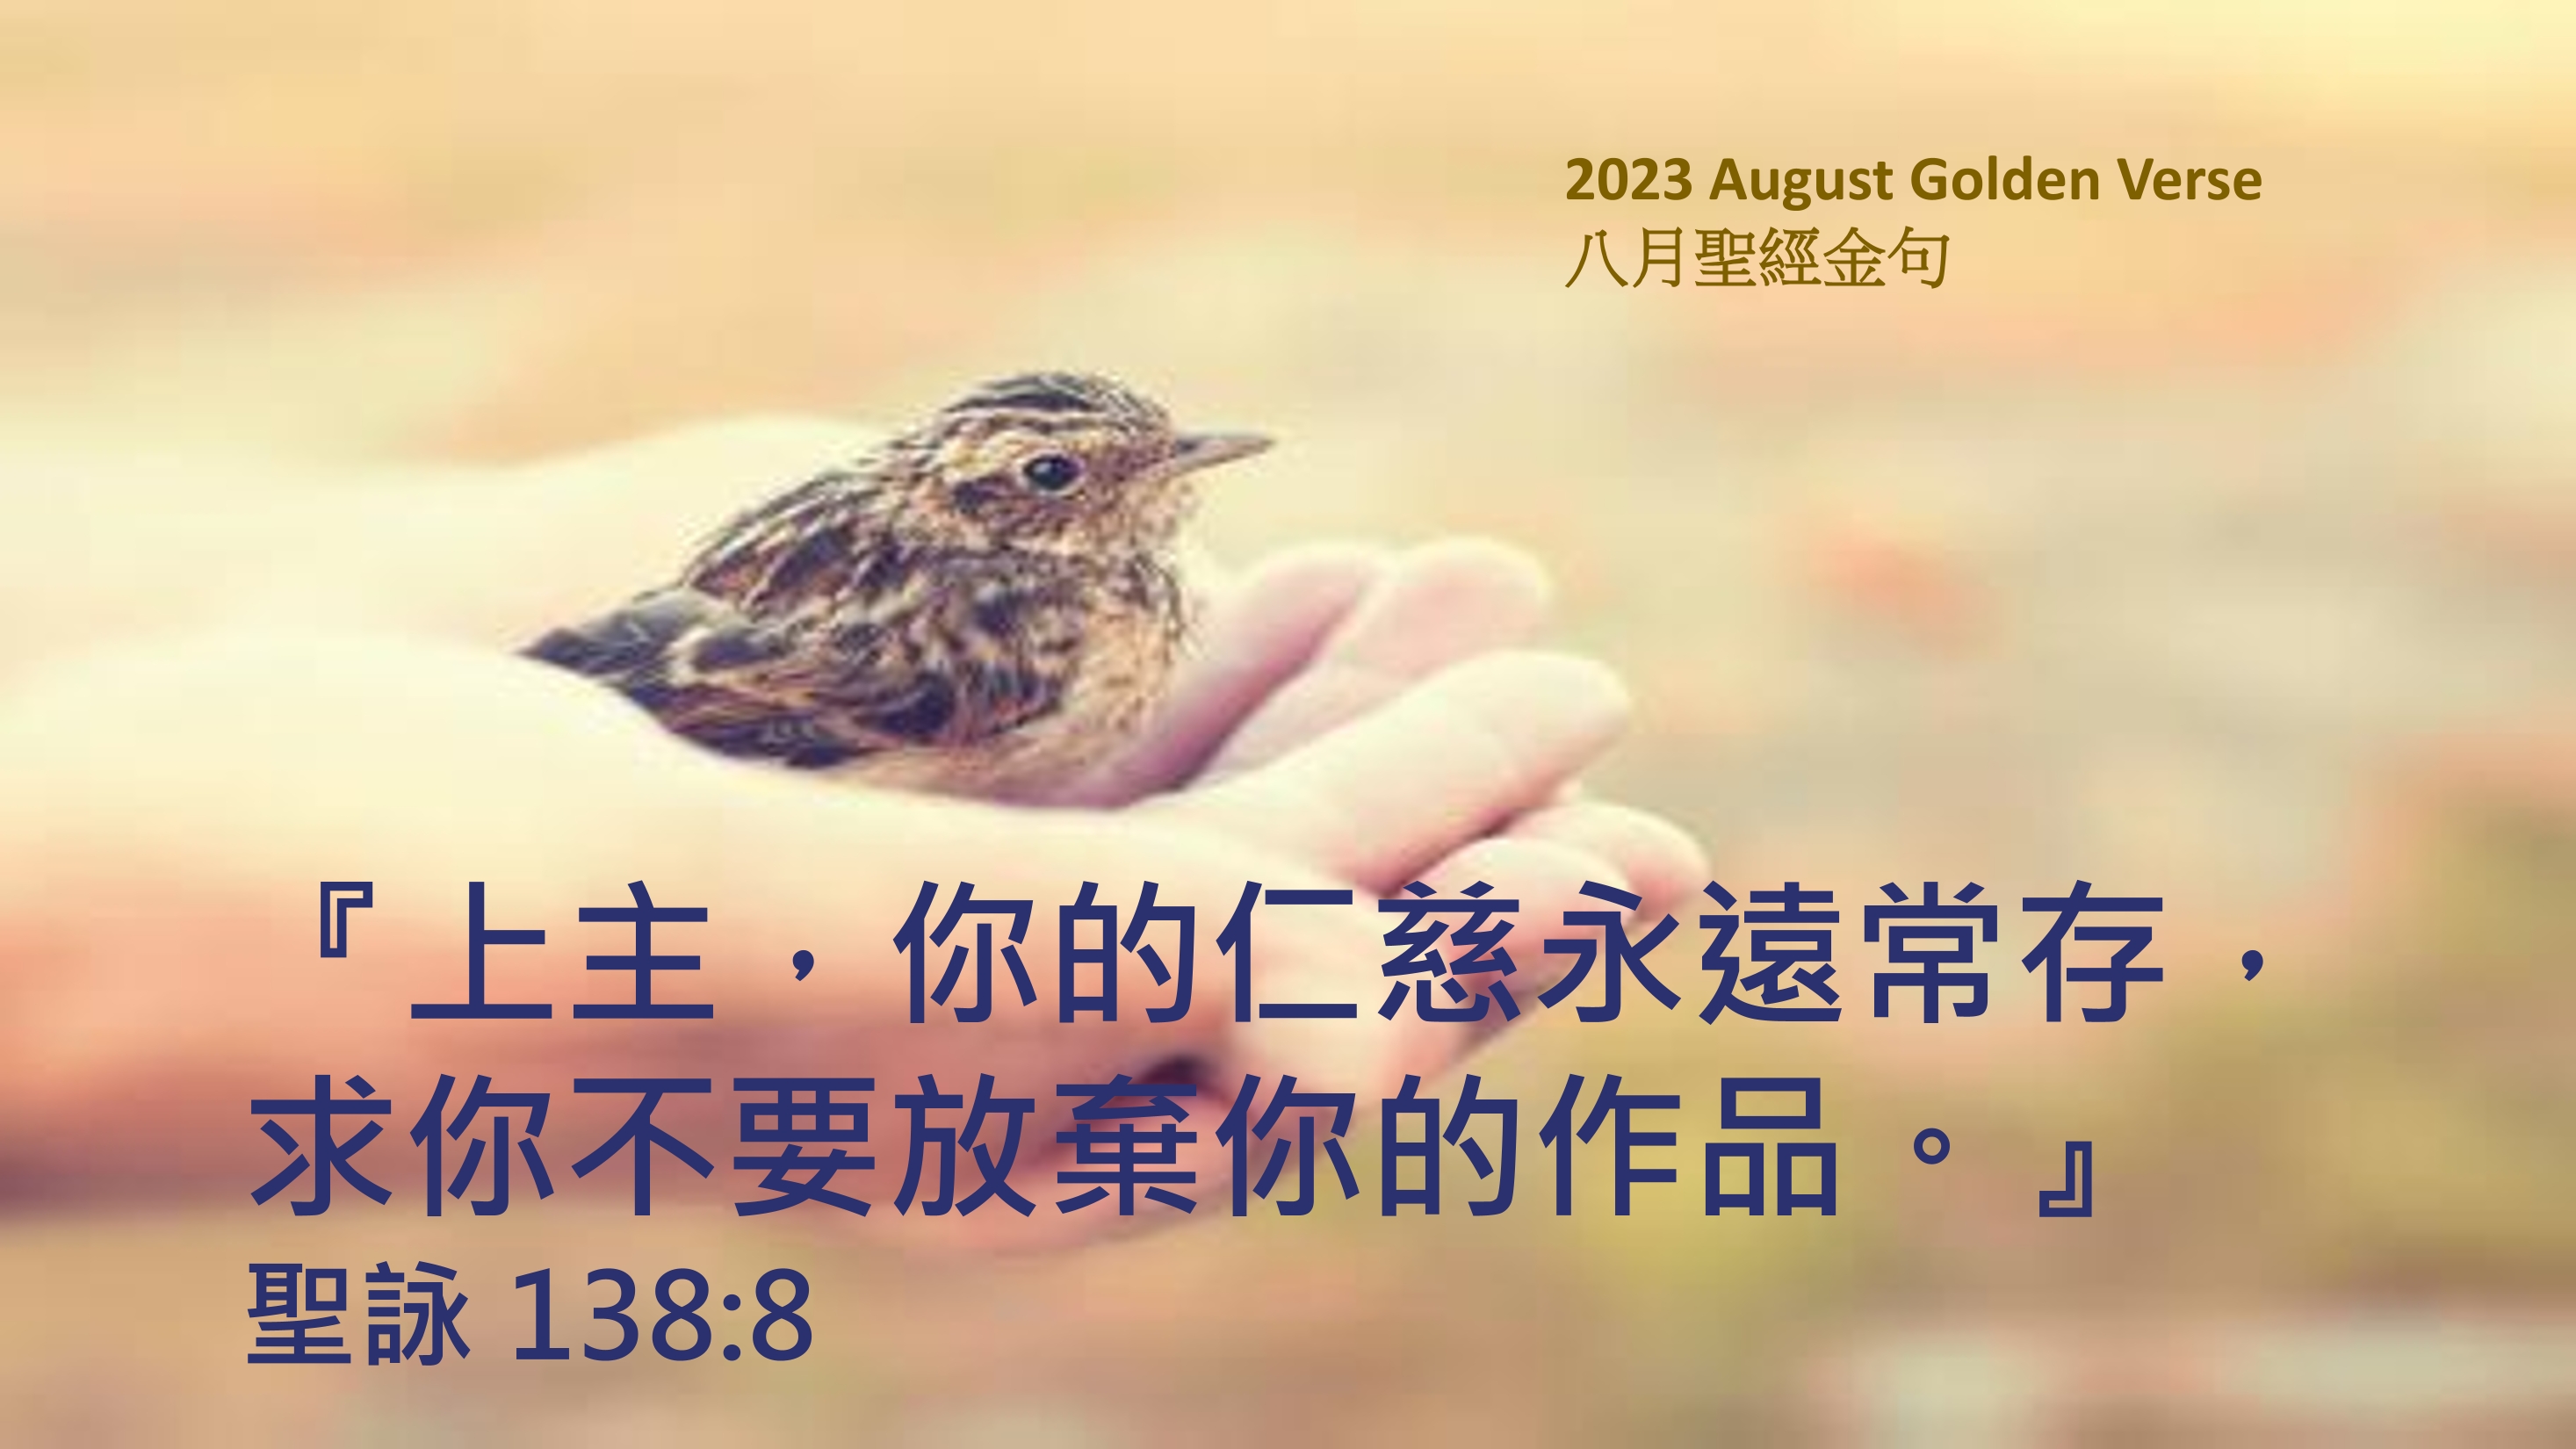 Golden-verse-202308-cn.jpg